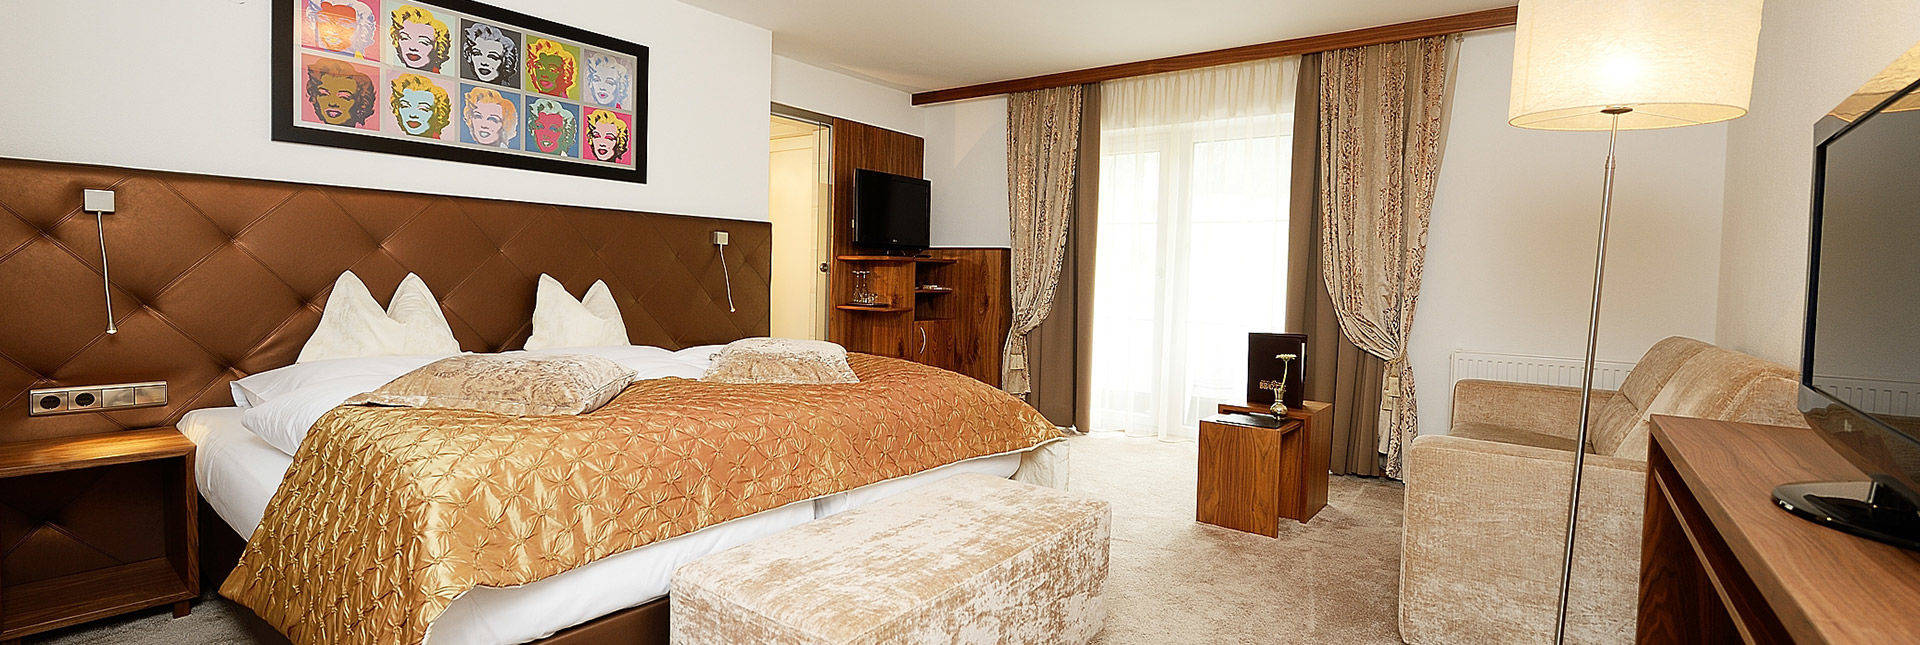 Rooms and Suites Hotel Brigitte